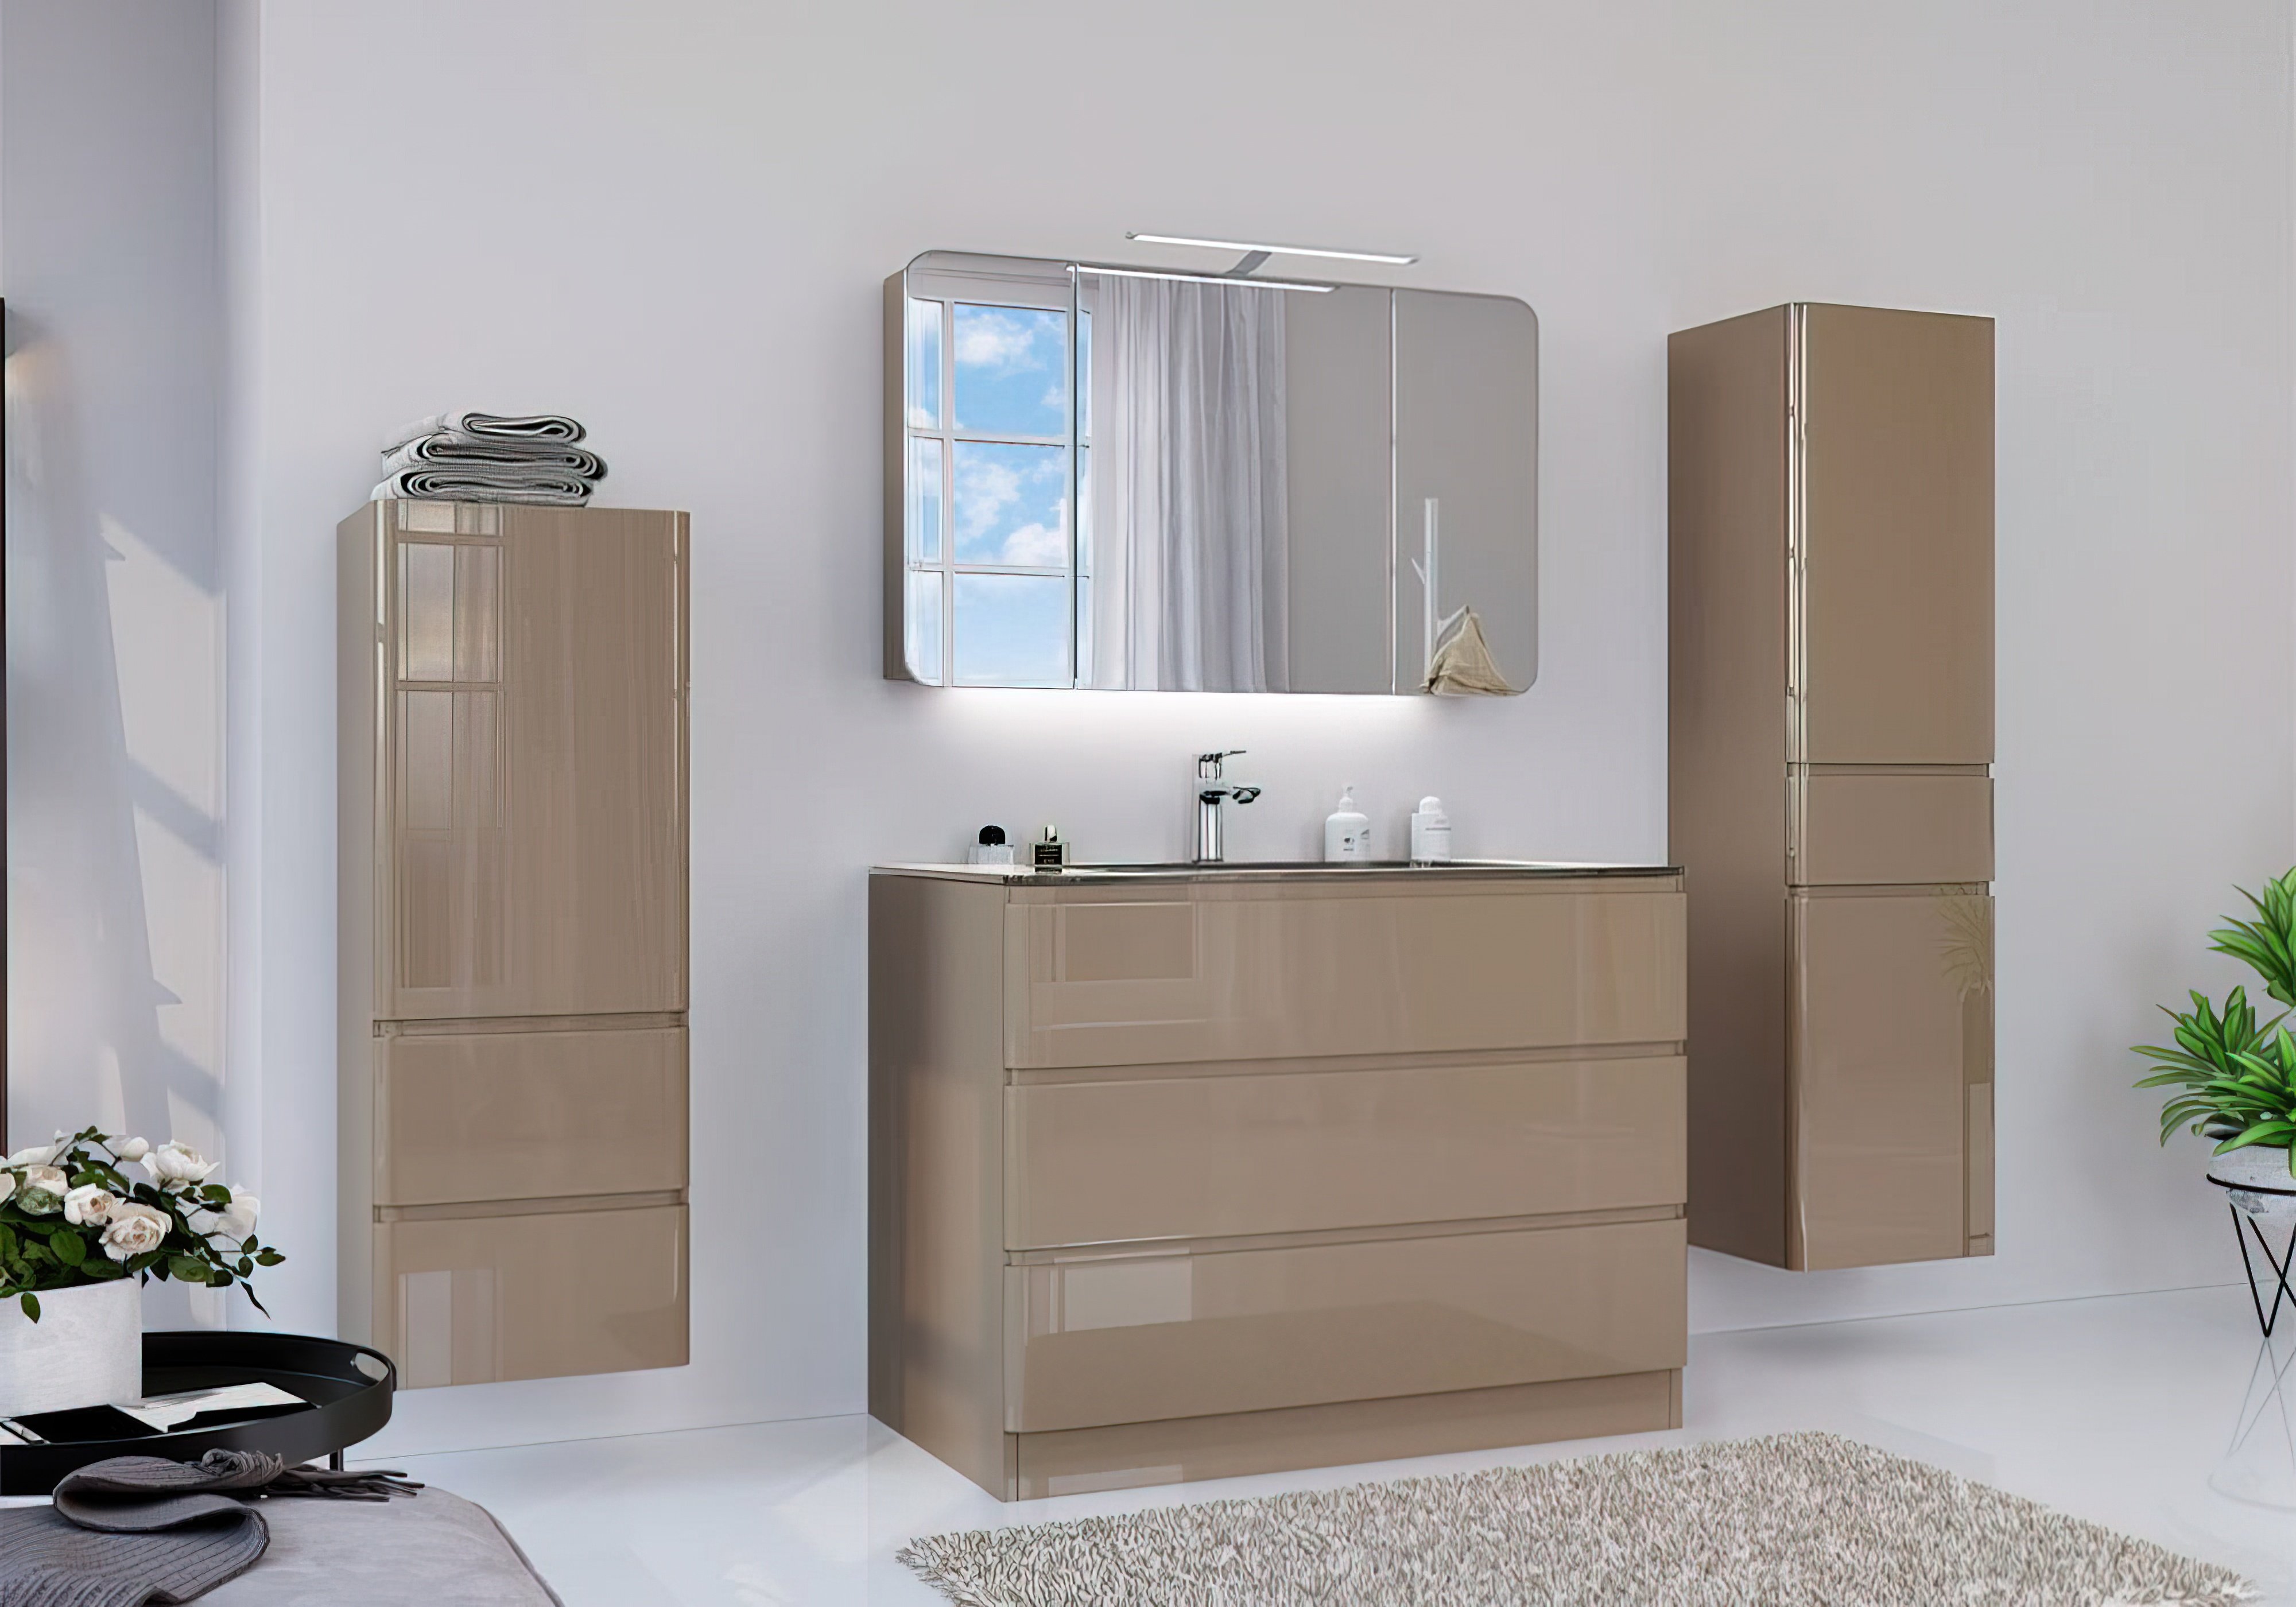  Купить Мебель для ванной комнаты Комплект мебели для ванной "Adele-2" Marsan